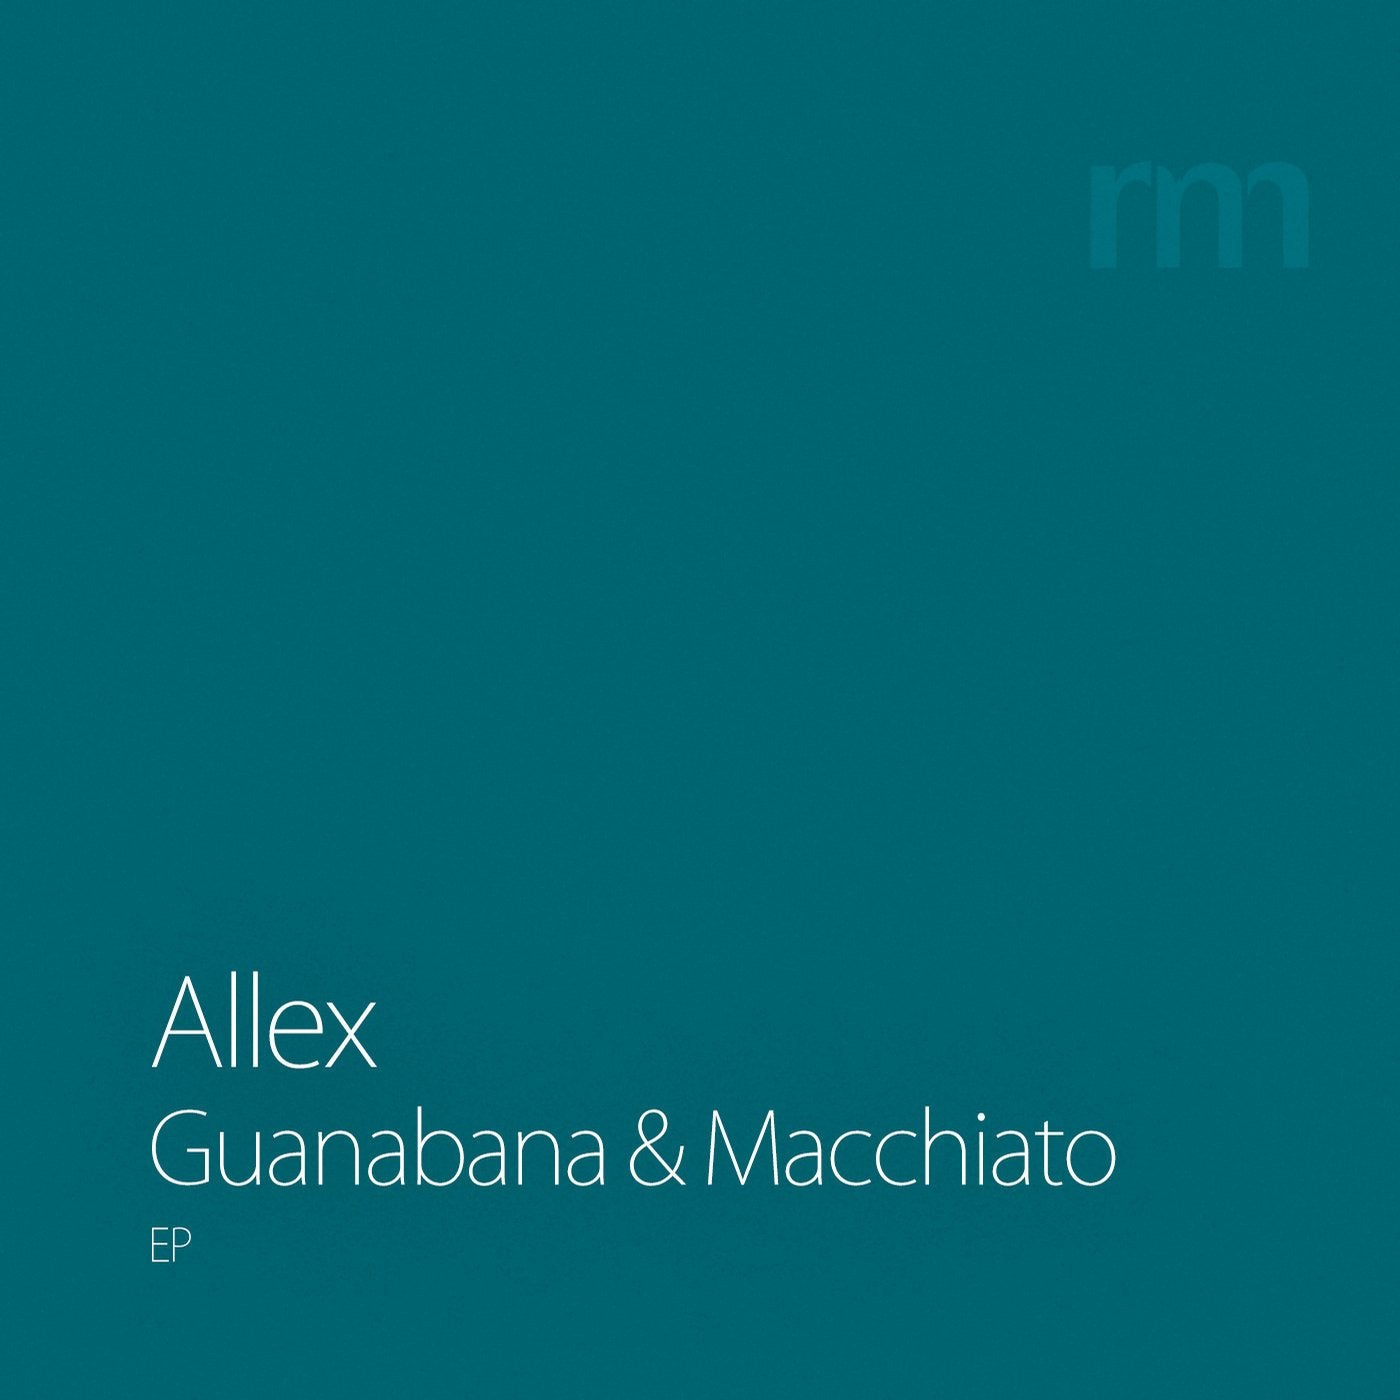 Guanabana and Macchiato